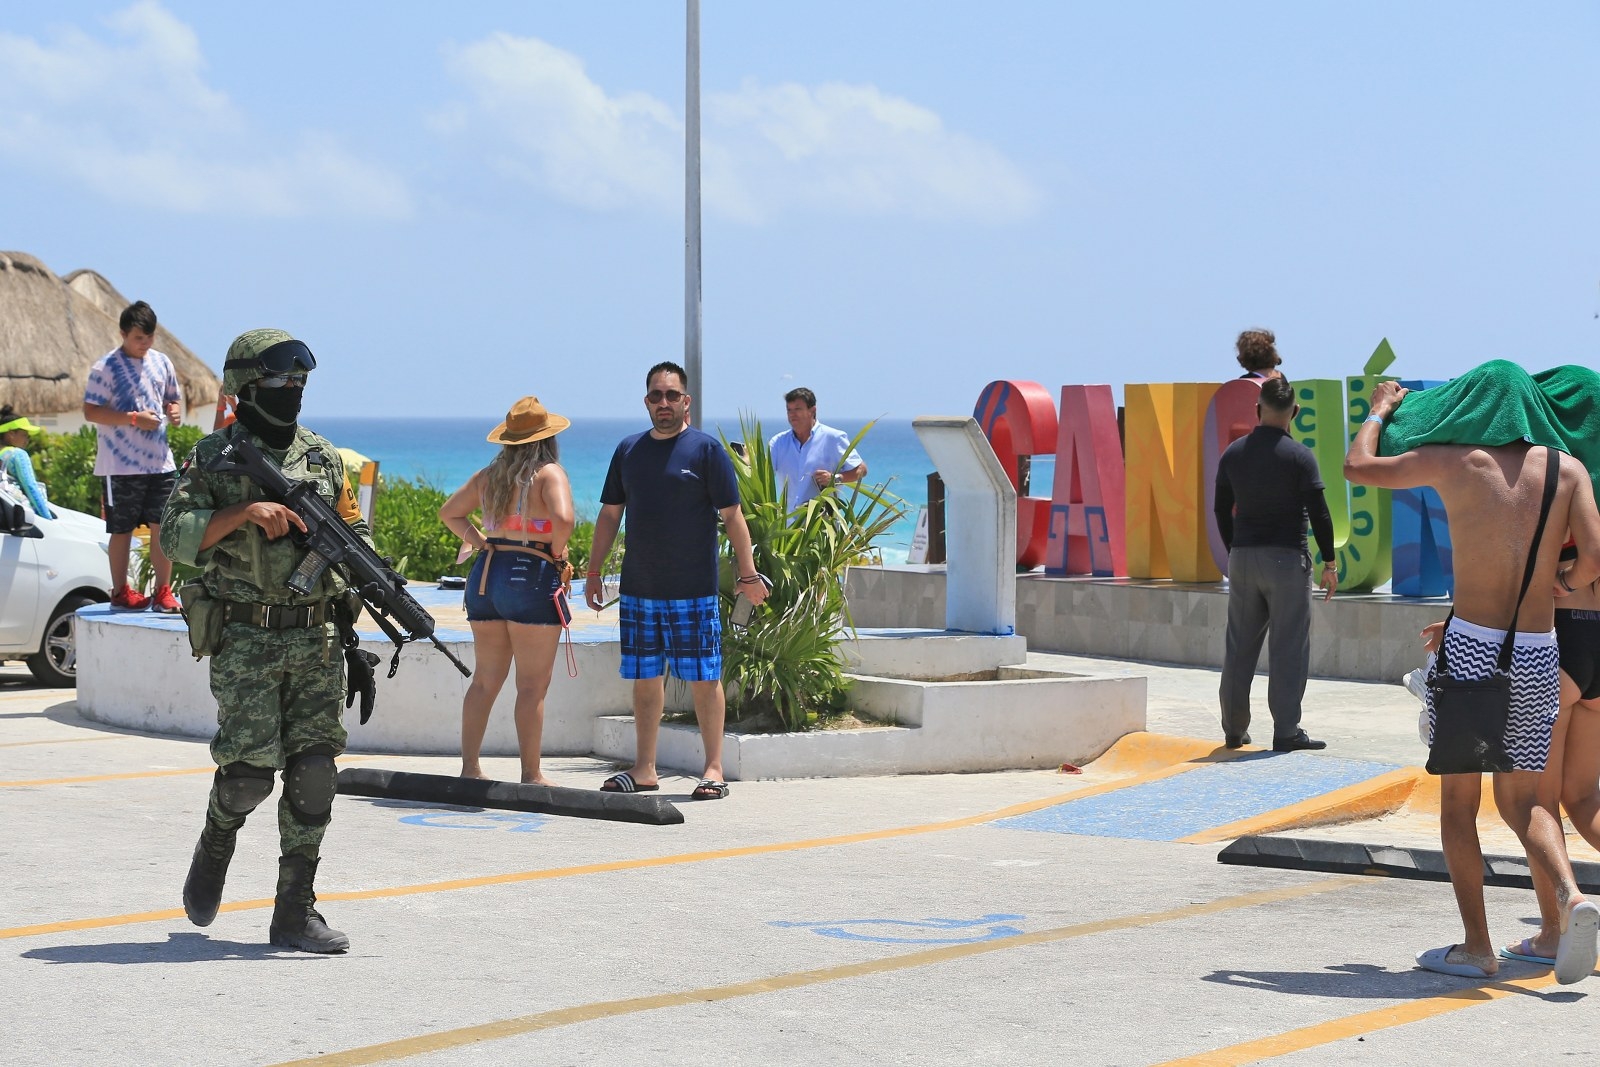 Quintana Roo peor que Guerrero; es el destino de playa más inseguro de México: Cicotur